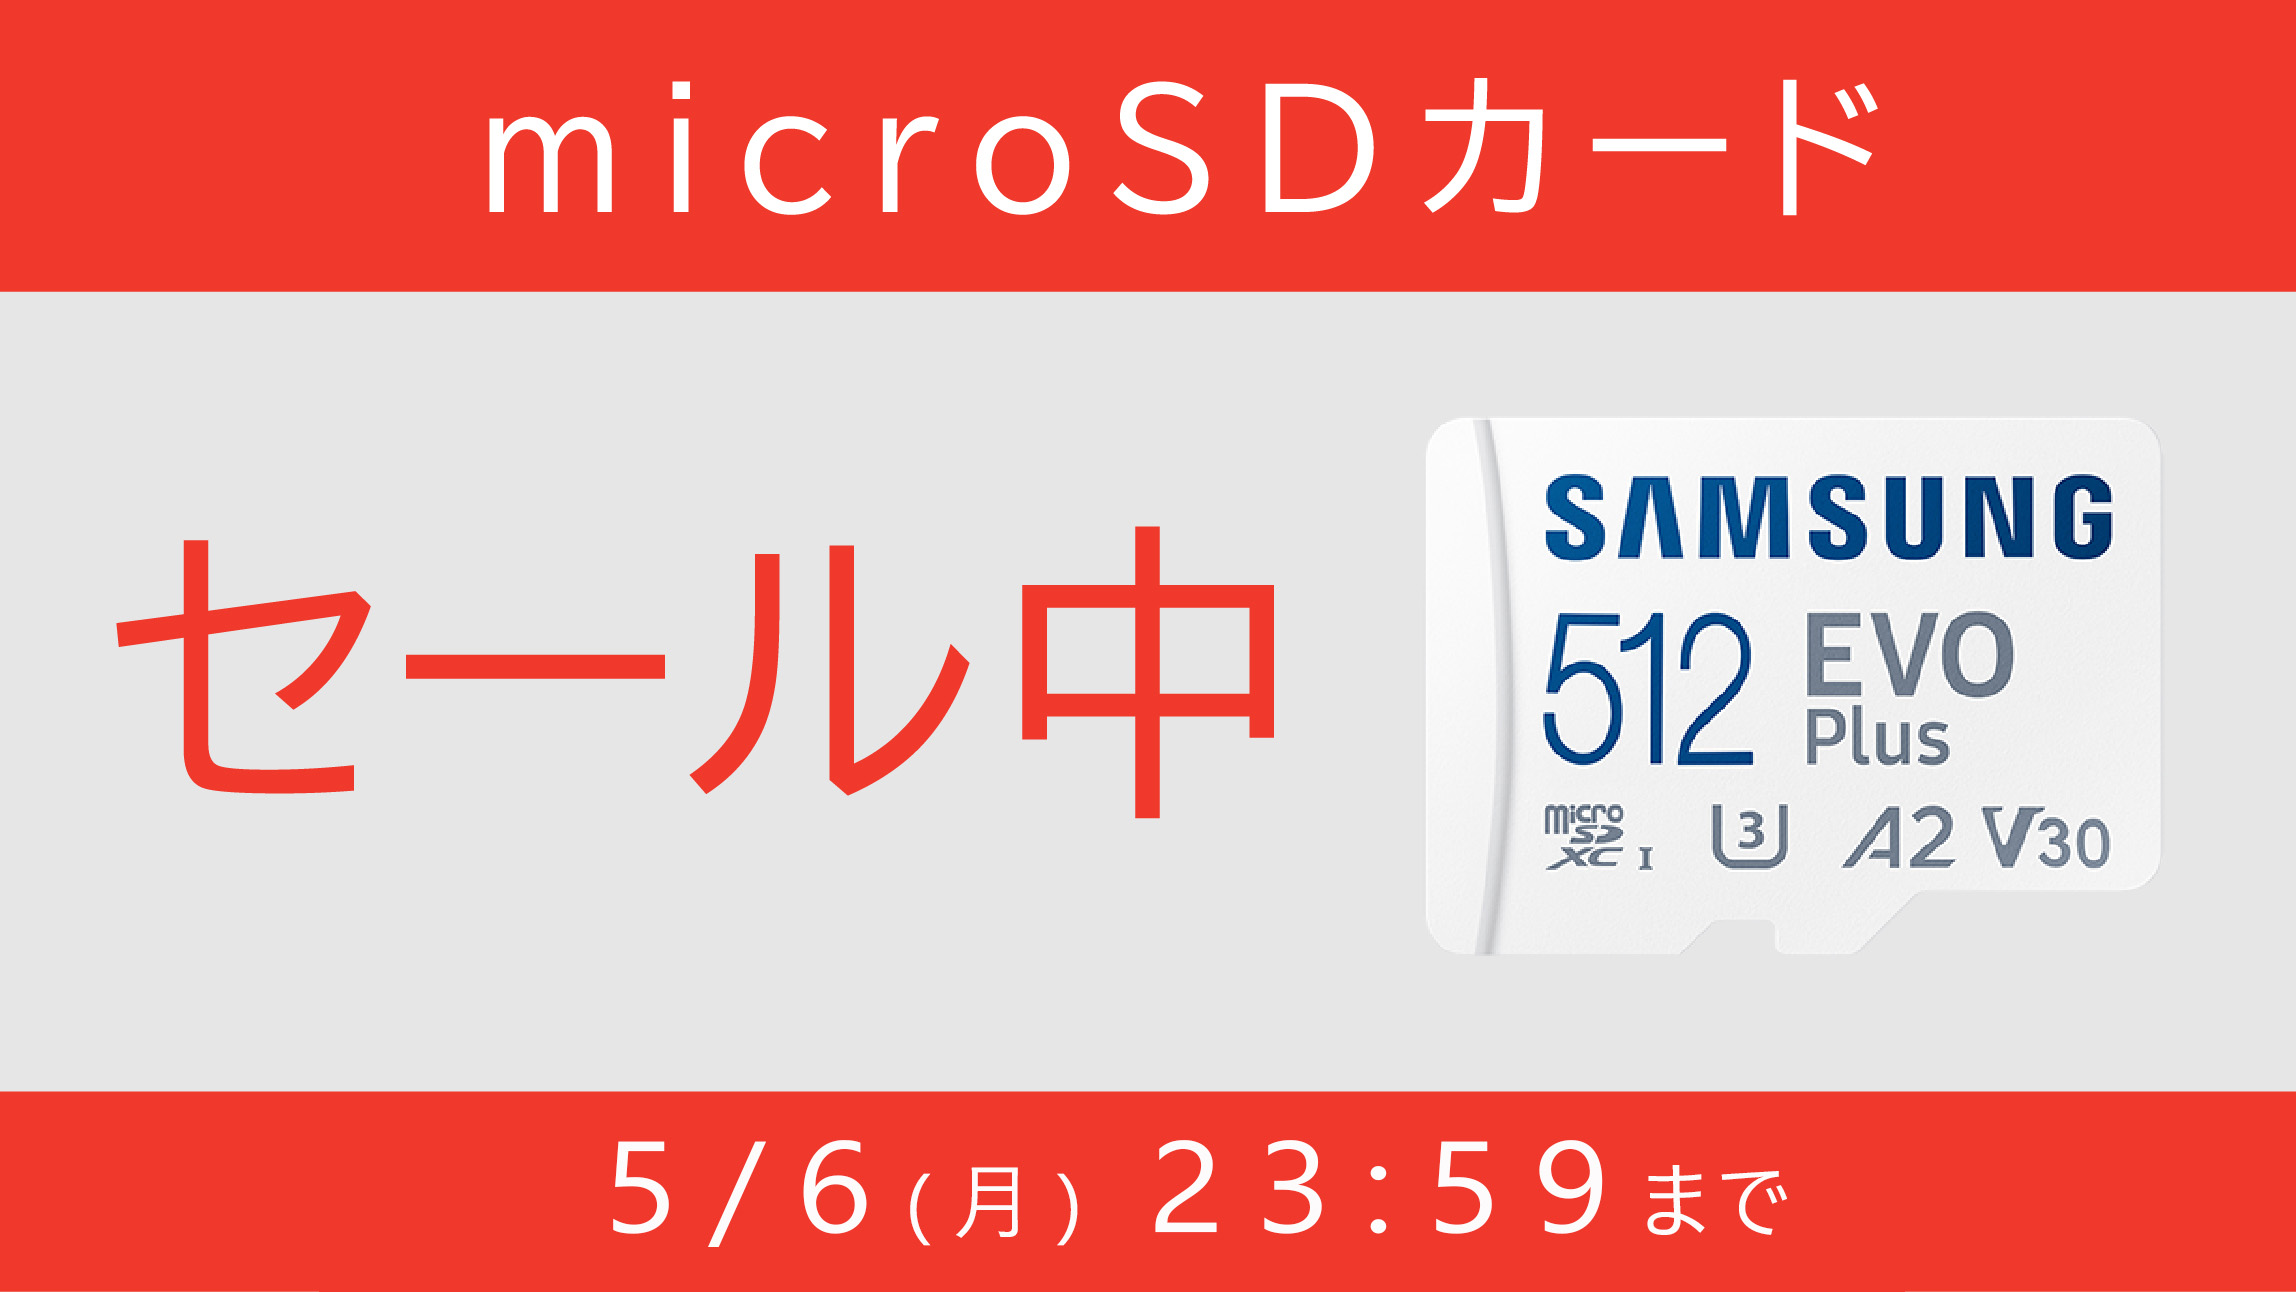 microSDカードのお得なキャンペーン(総合トップ特集バナー)